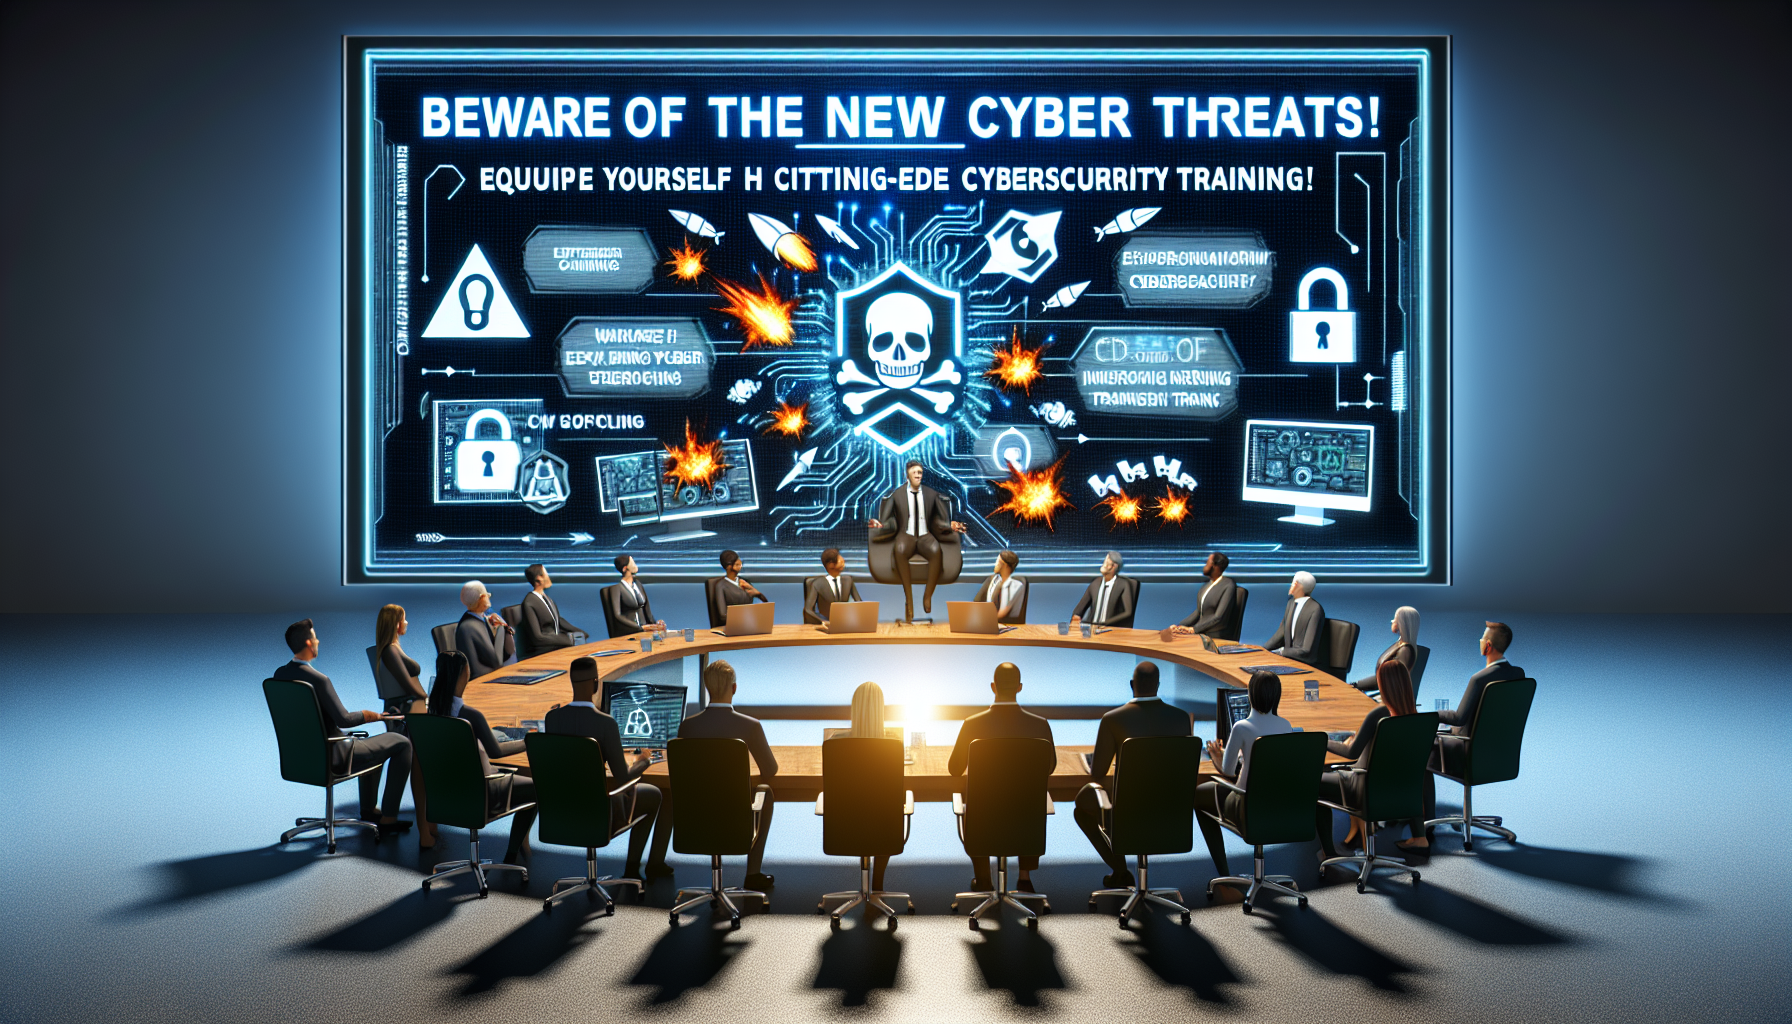 découvrez les nouvelles menaces en cybersécurité et apprenez à les contrer grâce à notre formation en cybersécurité. protégez votre entreprise des risques cybernétiques avec nos experts.